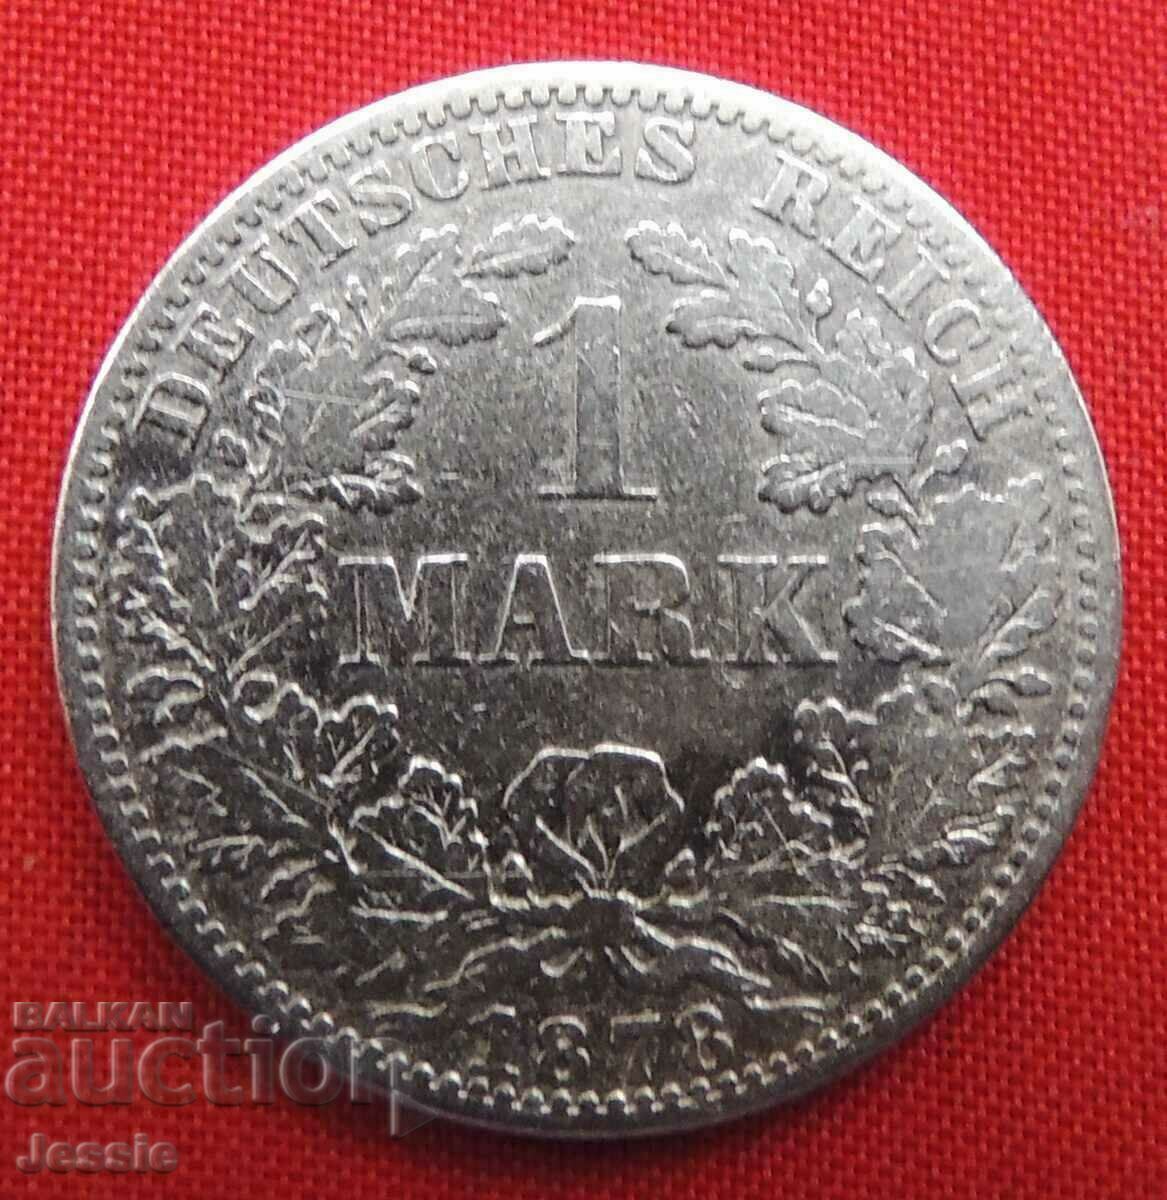 1 Mark 1878 A Germany silver Berlin